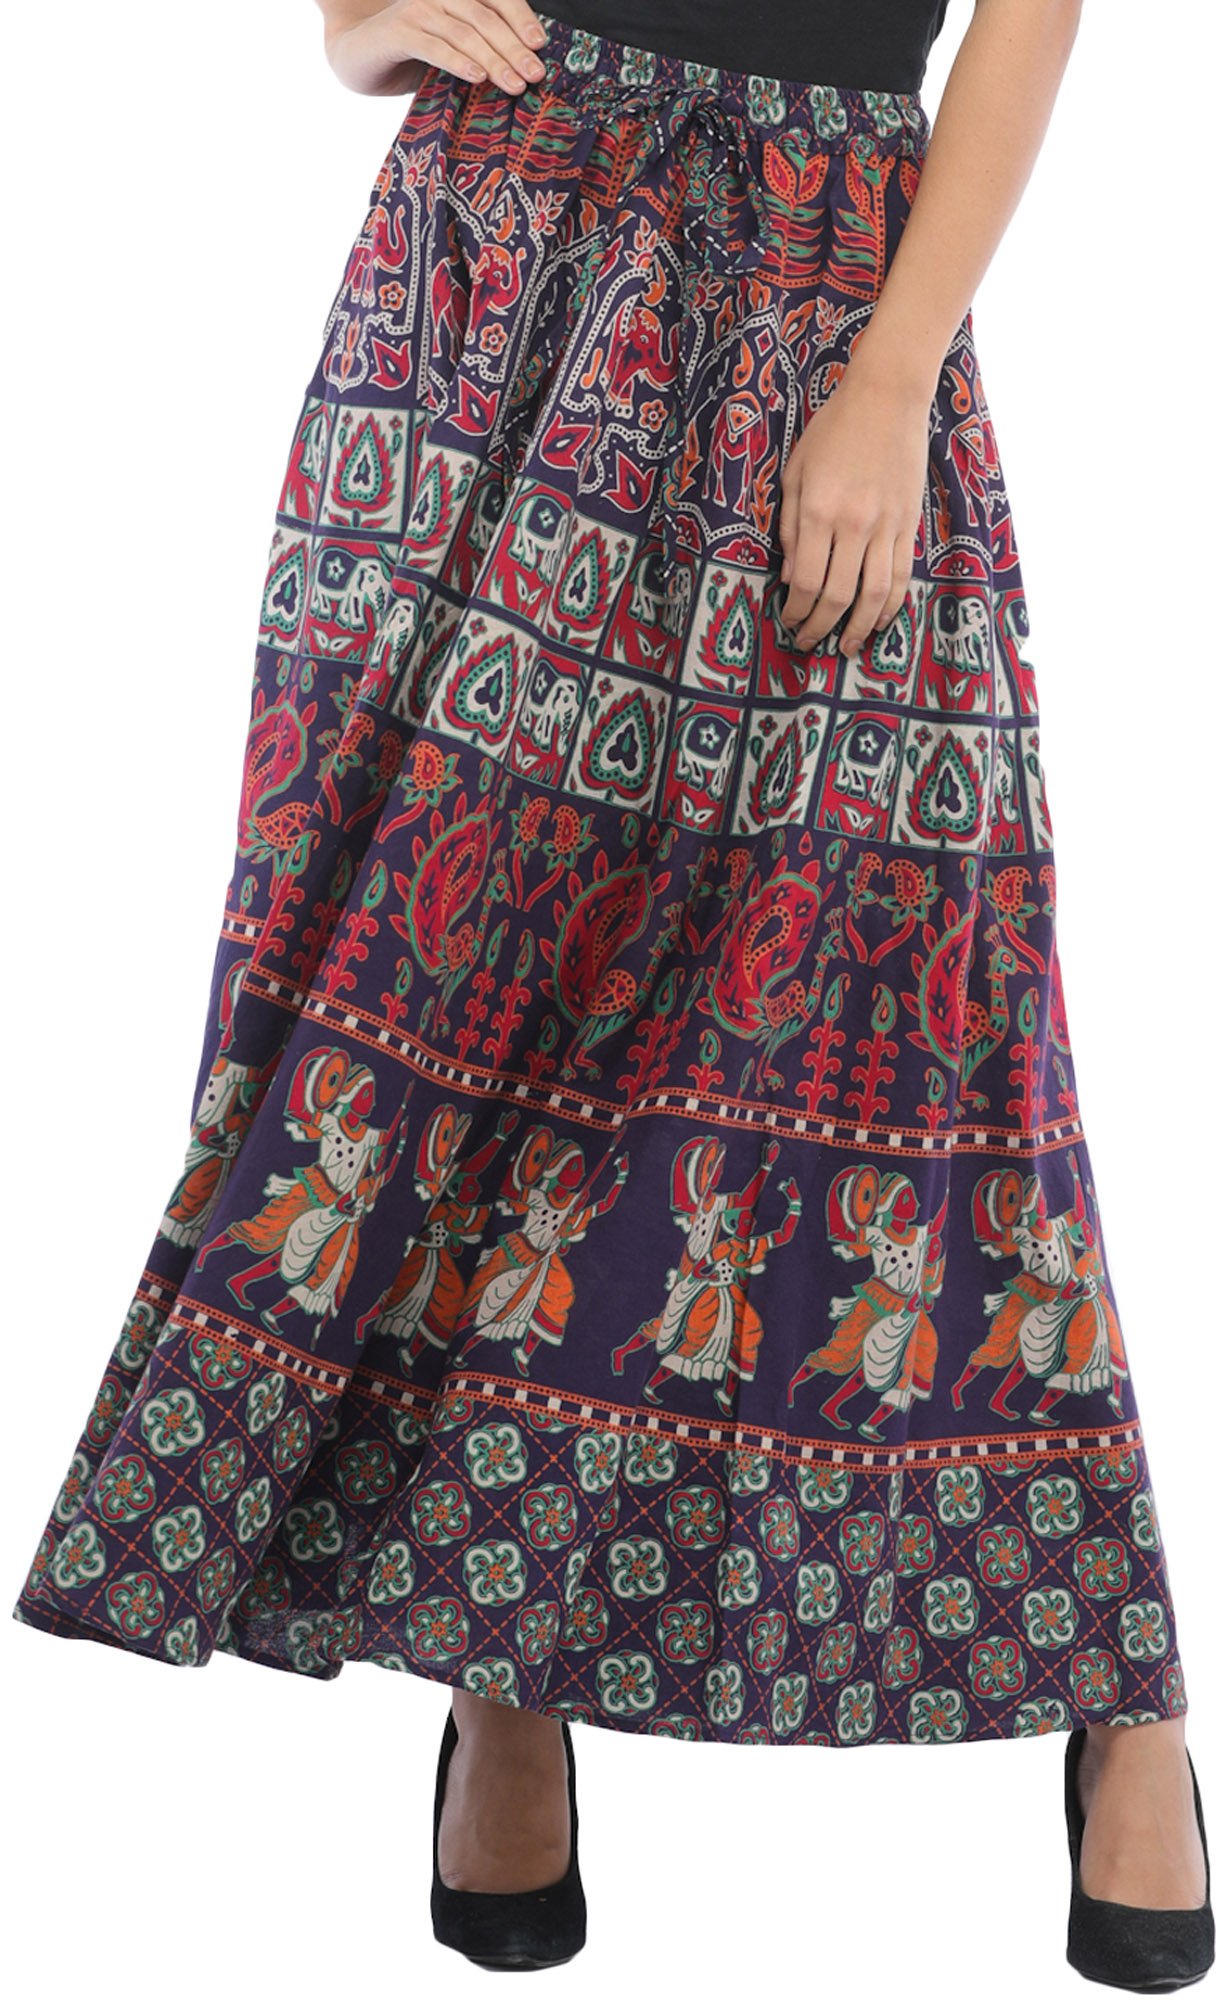 Sanganeri Long Skirt with Printed Elephants and Peacocks